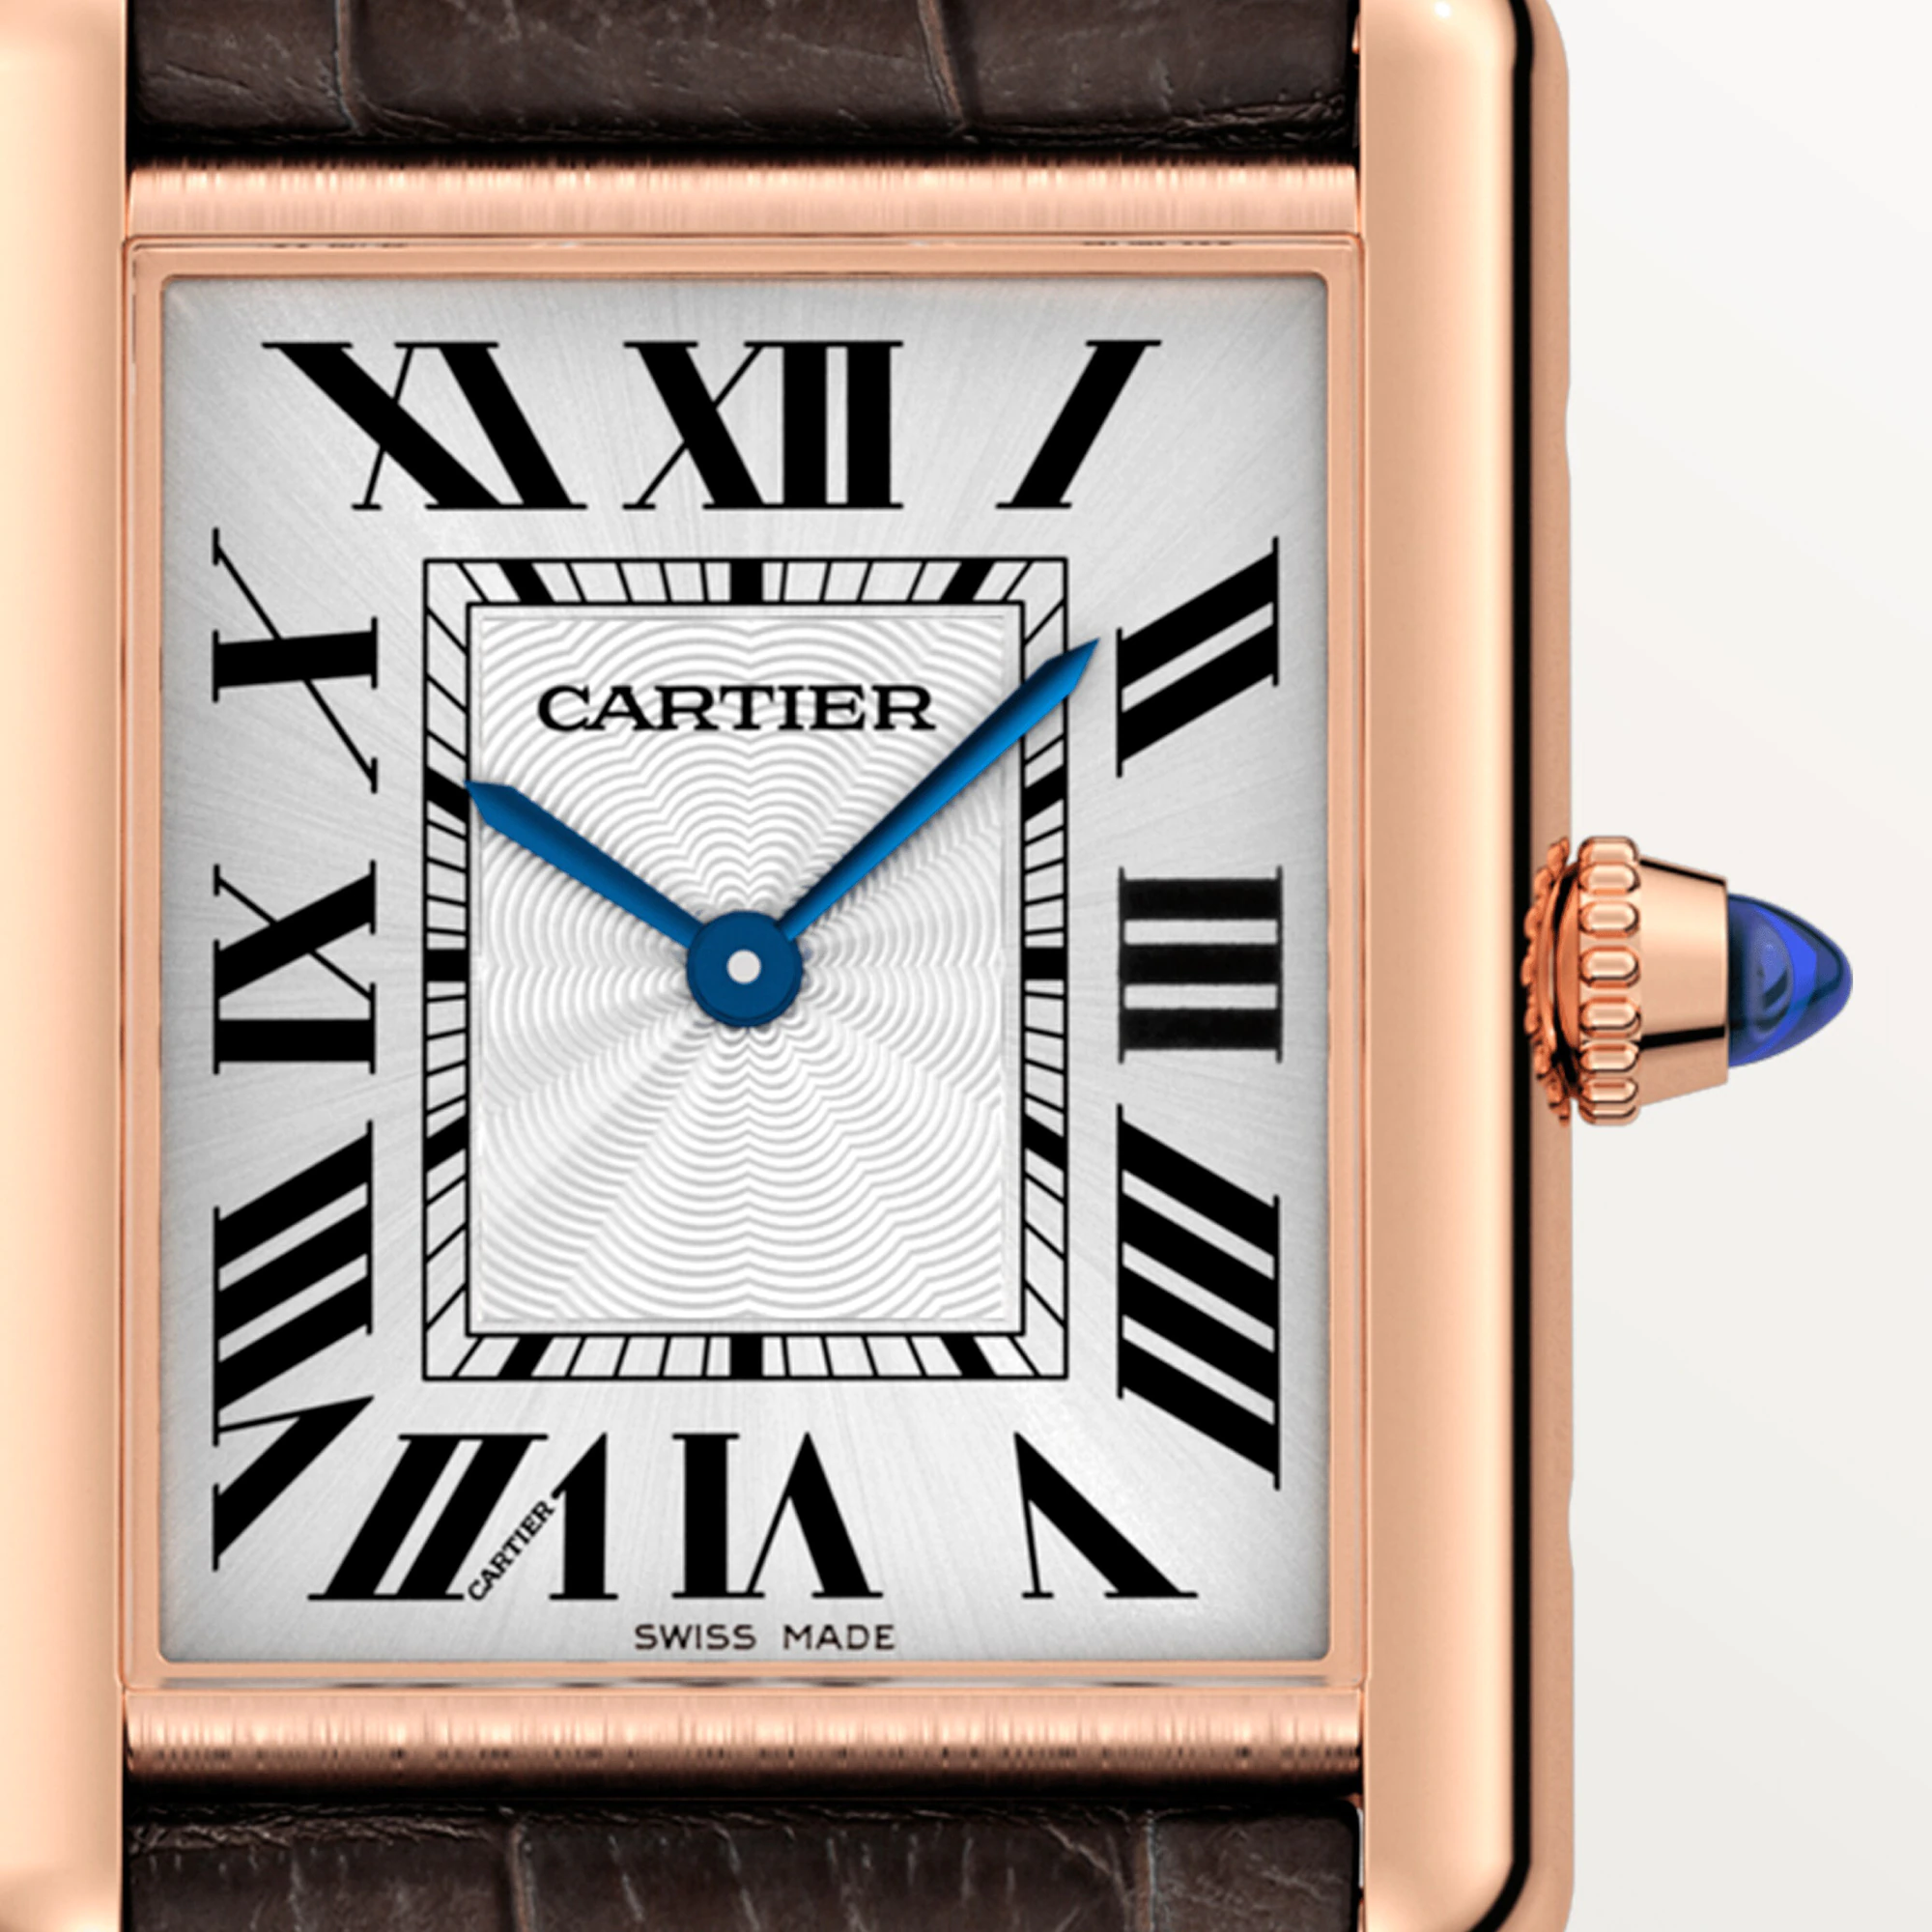 Cartier Tank Louis 18K Rose Gold Watch